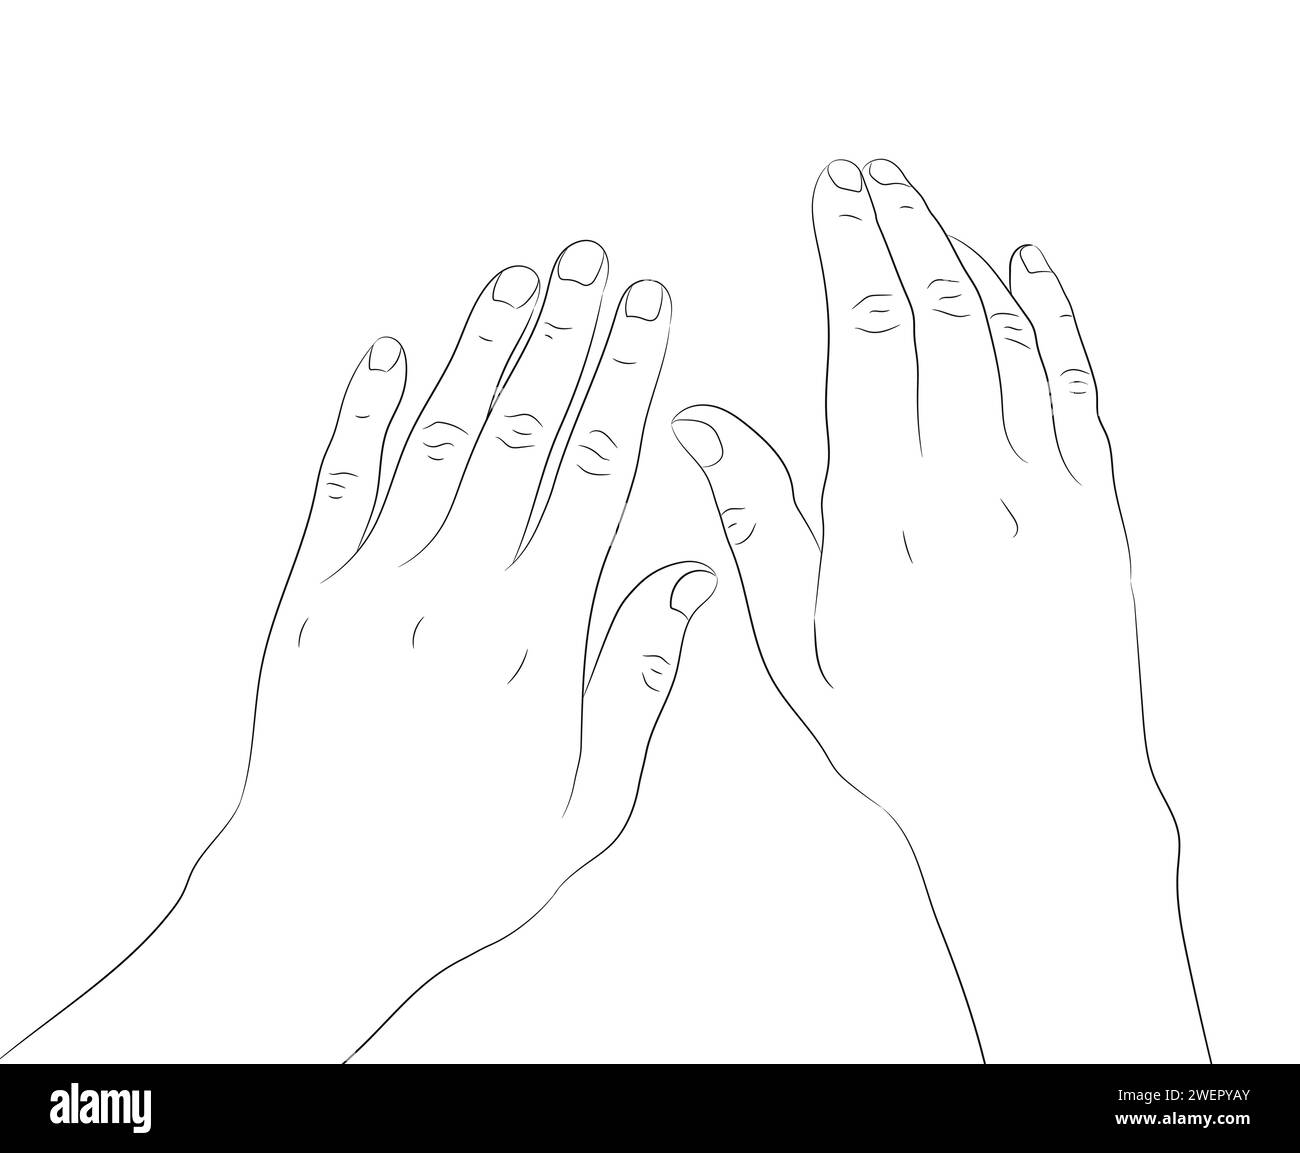 Handgezeichnete menschliche Hände streicheln die Oberfläche. Handkontur mit leerer Kontur. Vektorabbildung Stock Vektor